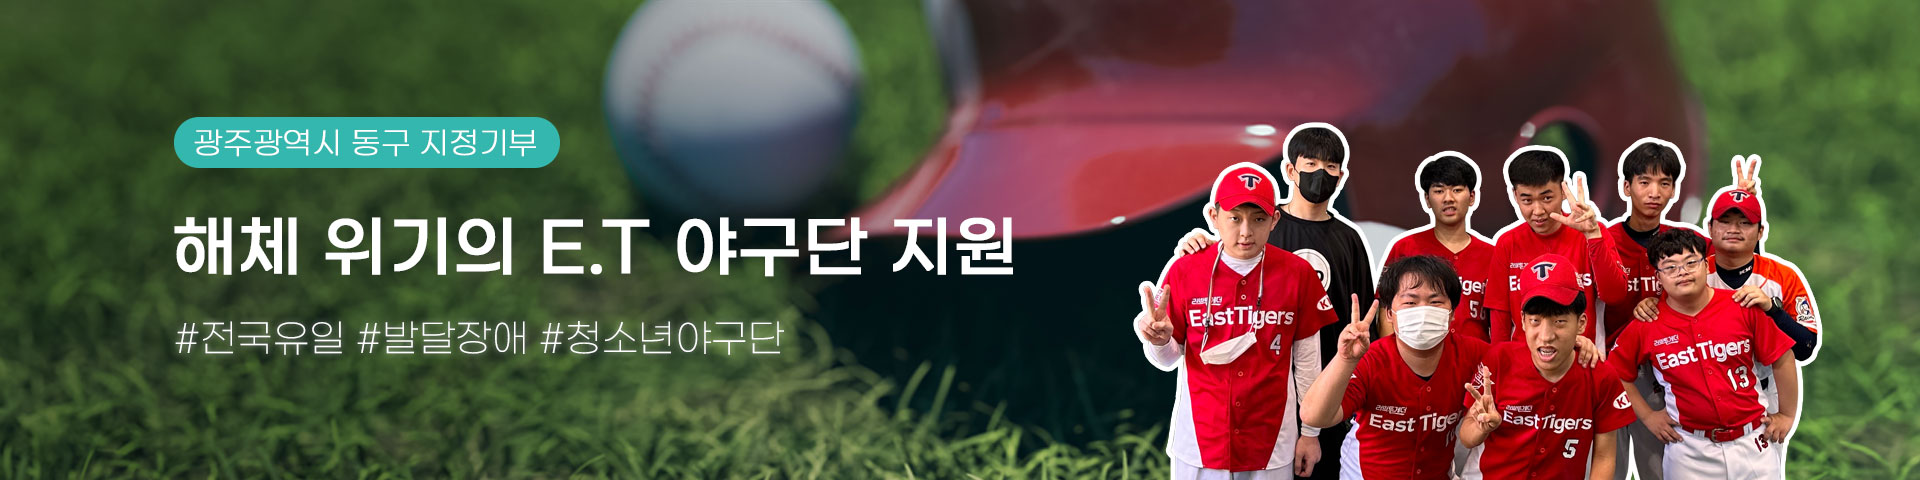 지정기부 소개 - 광주 동구 E.T 야구단 지원 프로젝트